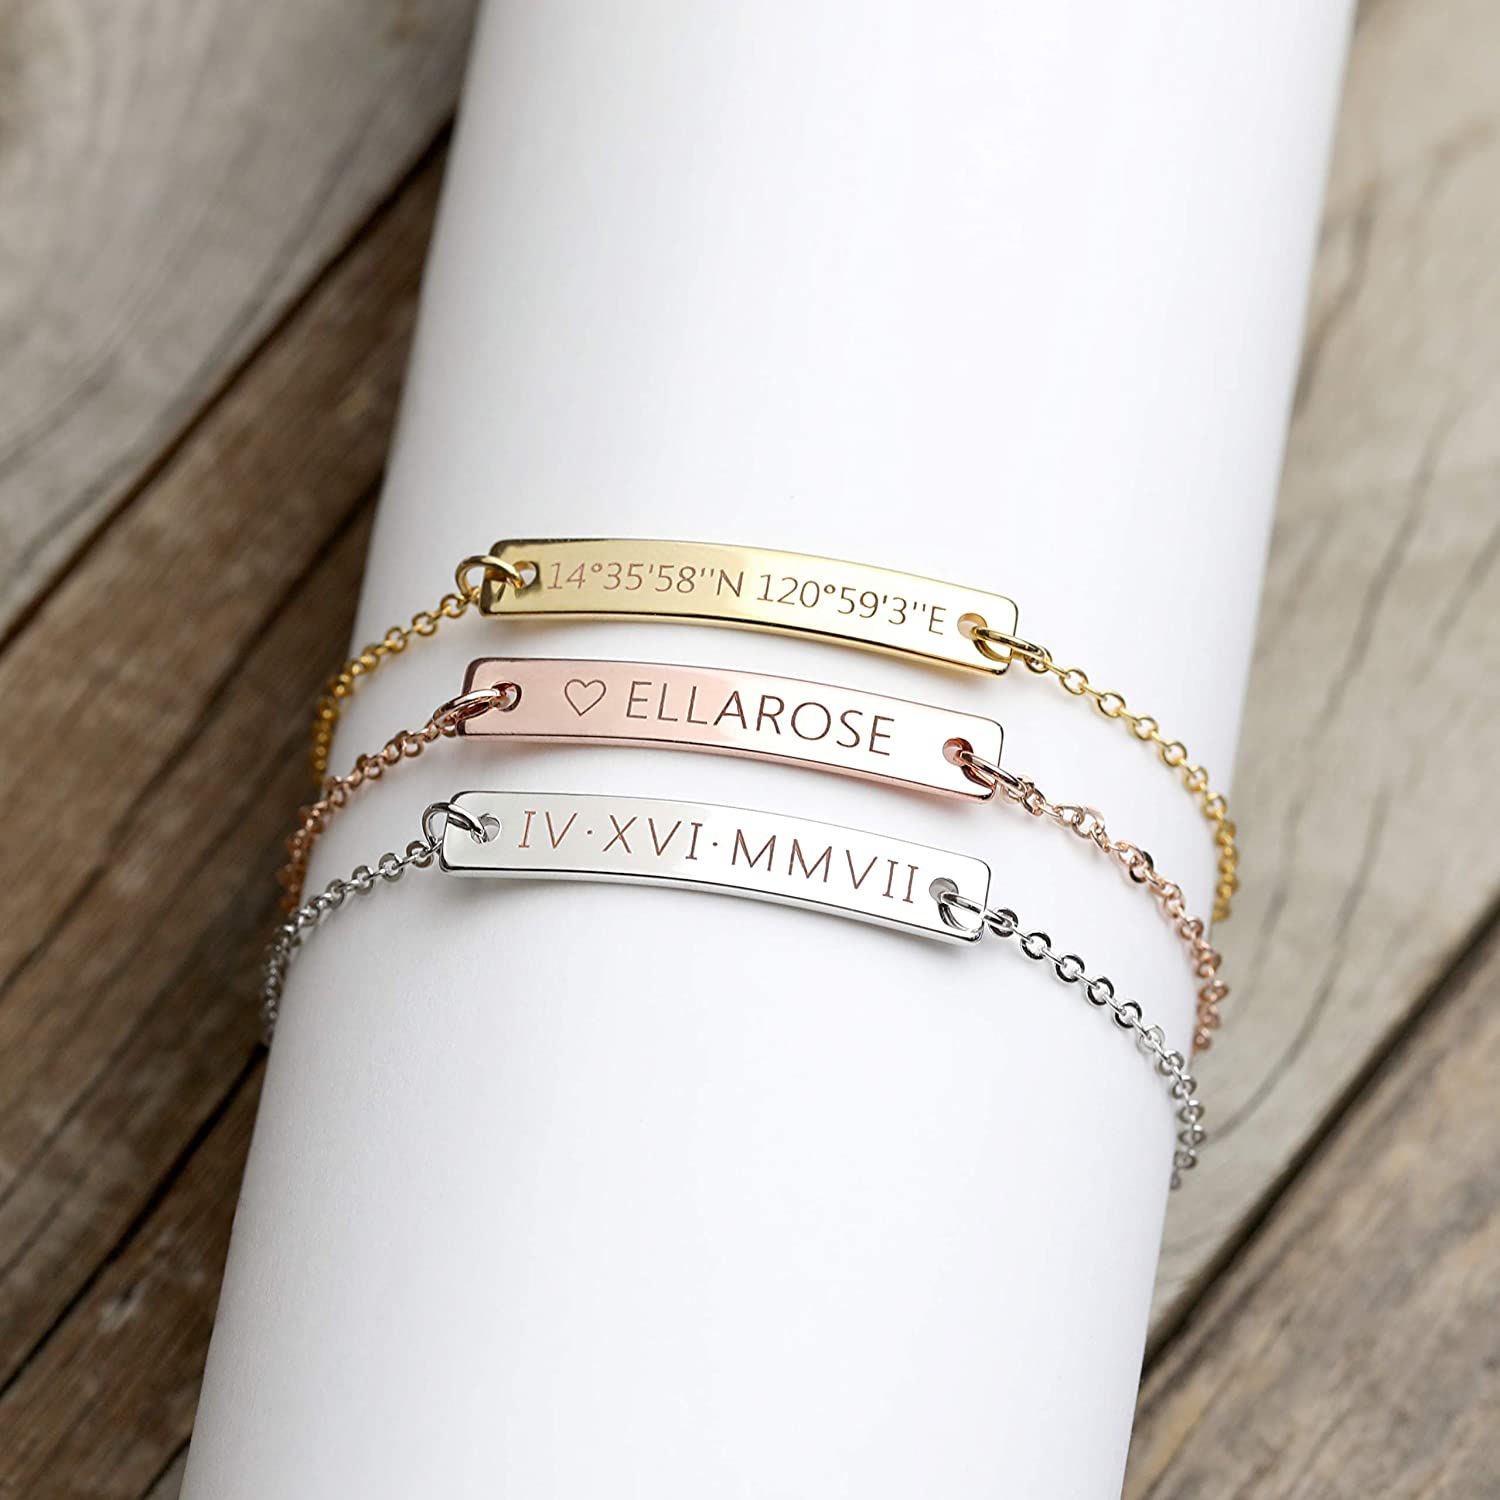 دستبندهای حکاکی در فروشگاه آنلاین ساعتچی طلا